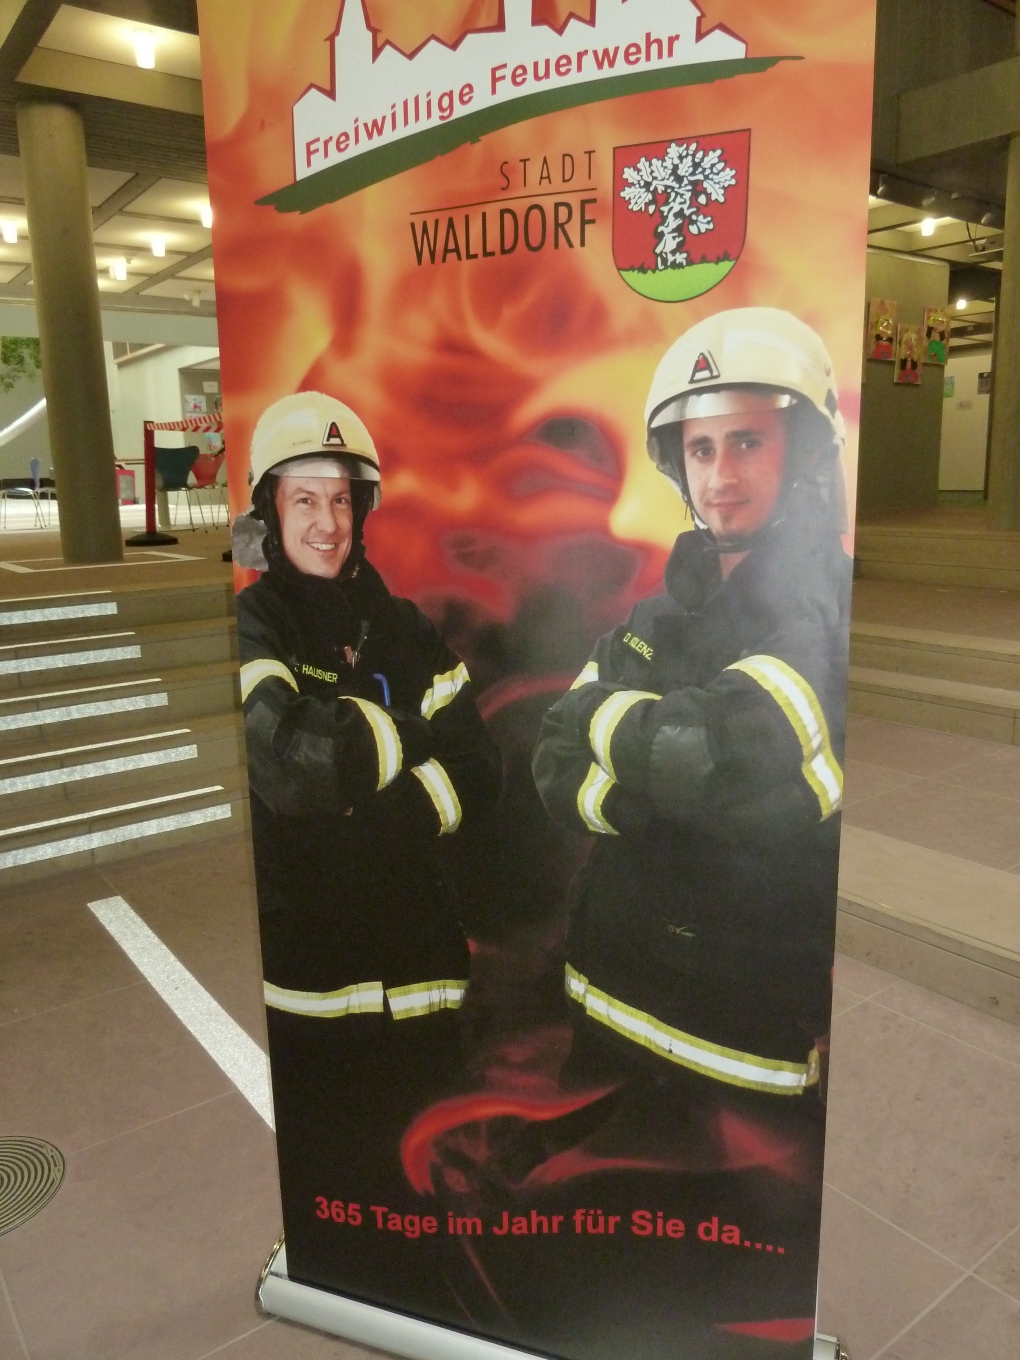 Die Feuerwehr-Ausstellung ist eröffnet